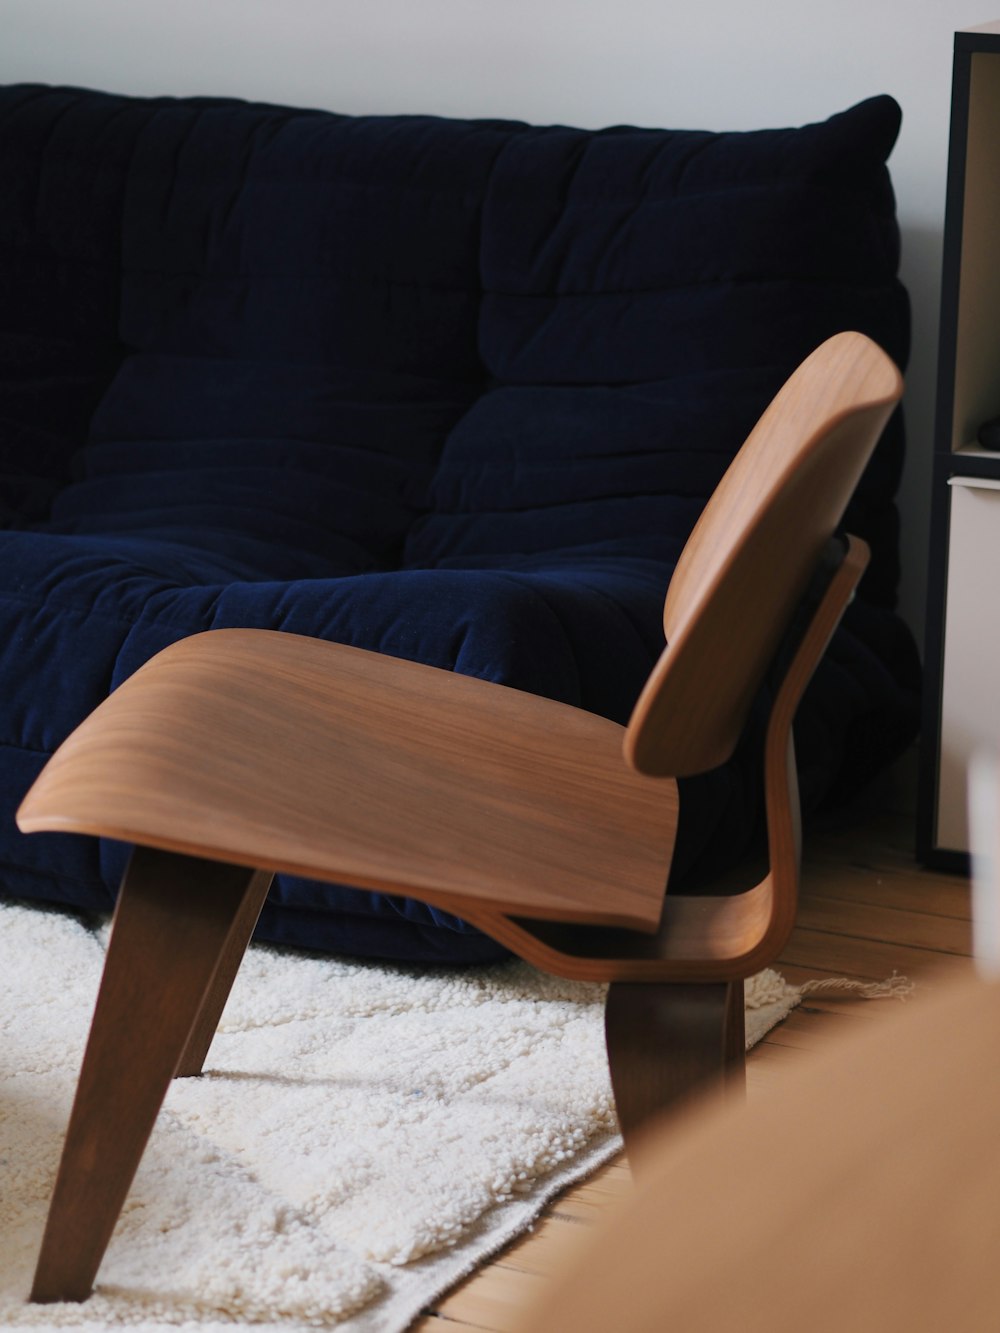 Una silla de madera sentada encima de una alfombra blanca